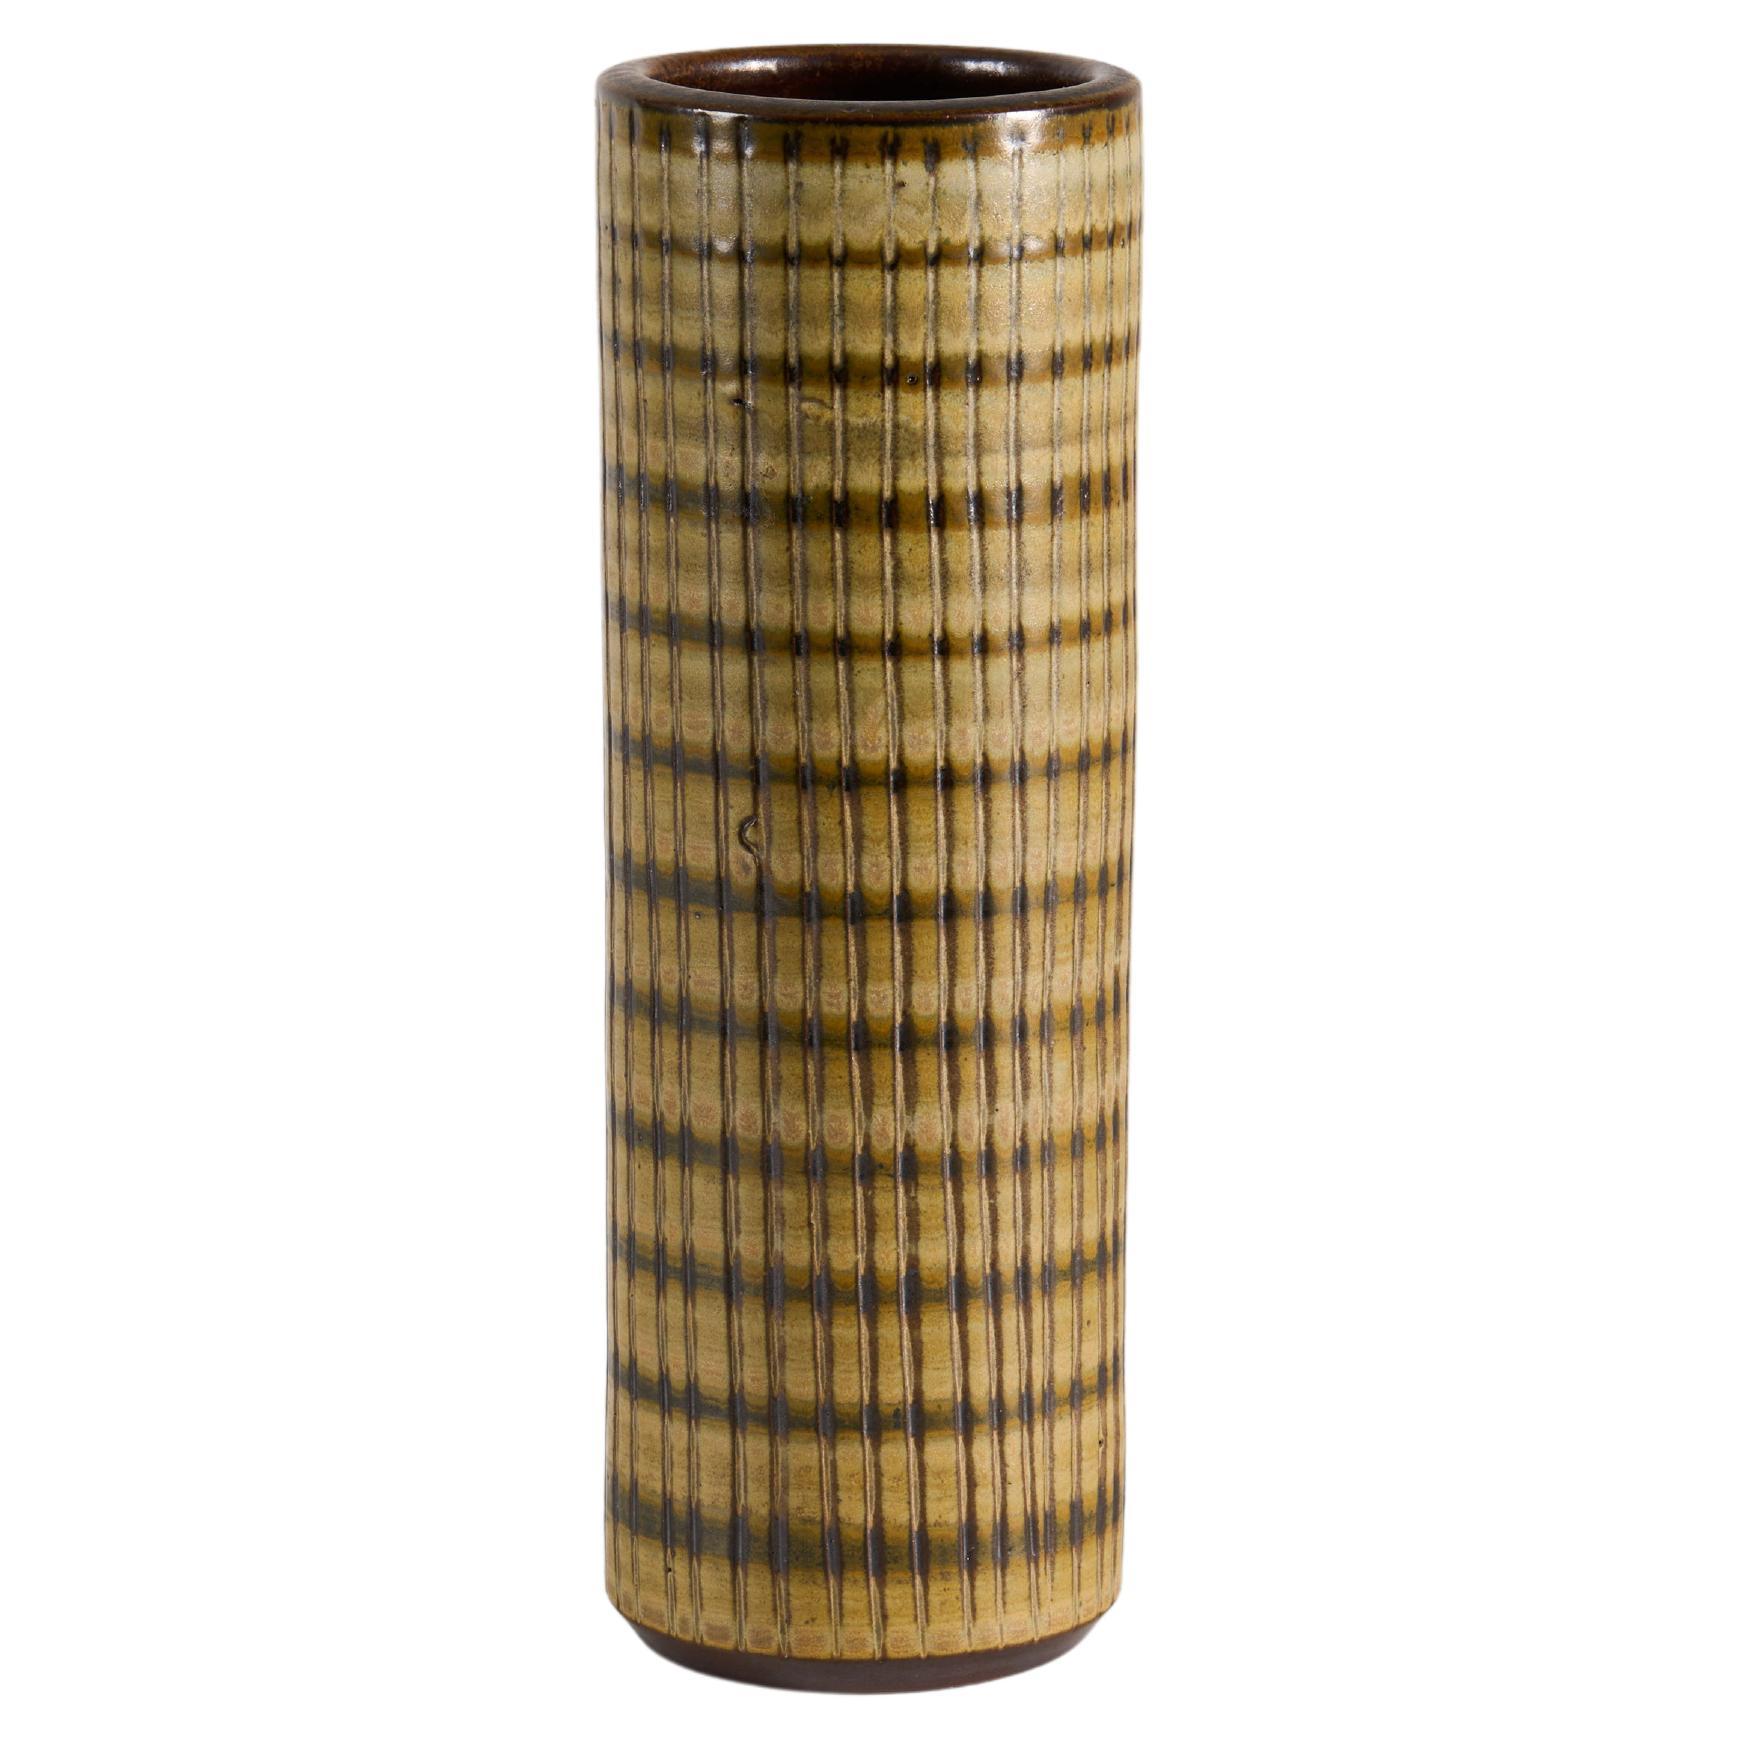 Vaso cilindrico in ceramica con smalto color terra, Wallåkra, Svezia, anni '60